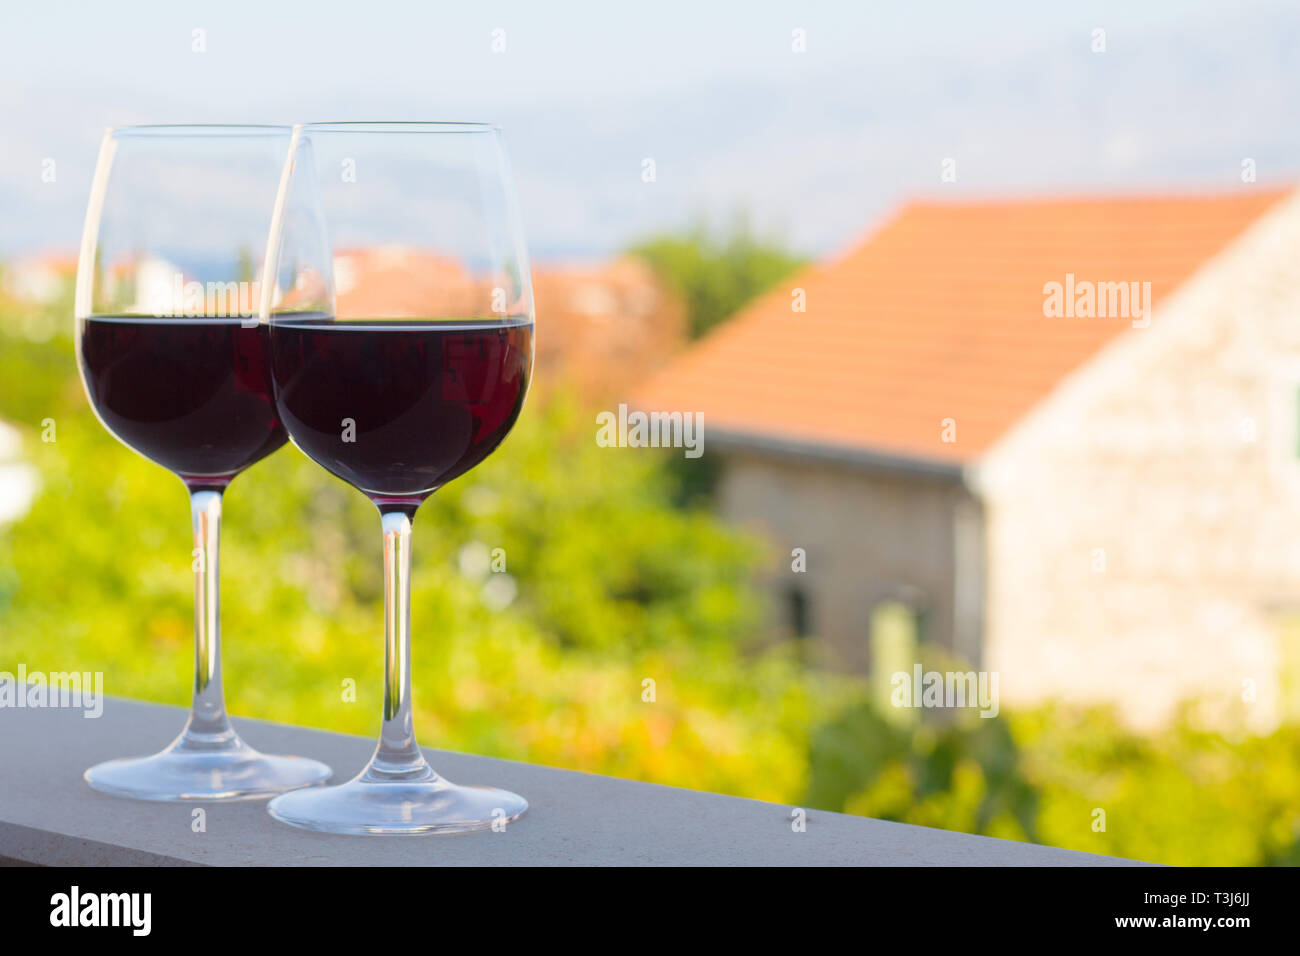 Deux verres de vin rouge à Terrace patio avec vue sur la ville un arrière-plan en Croatie Supetar , concept vin naturel croate Banque D'Images